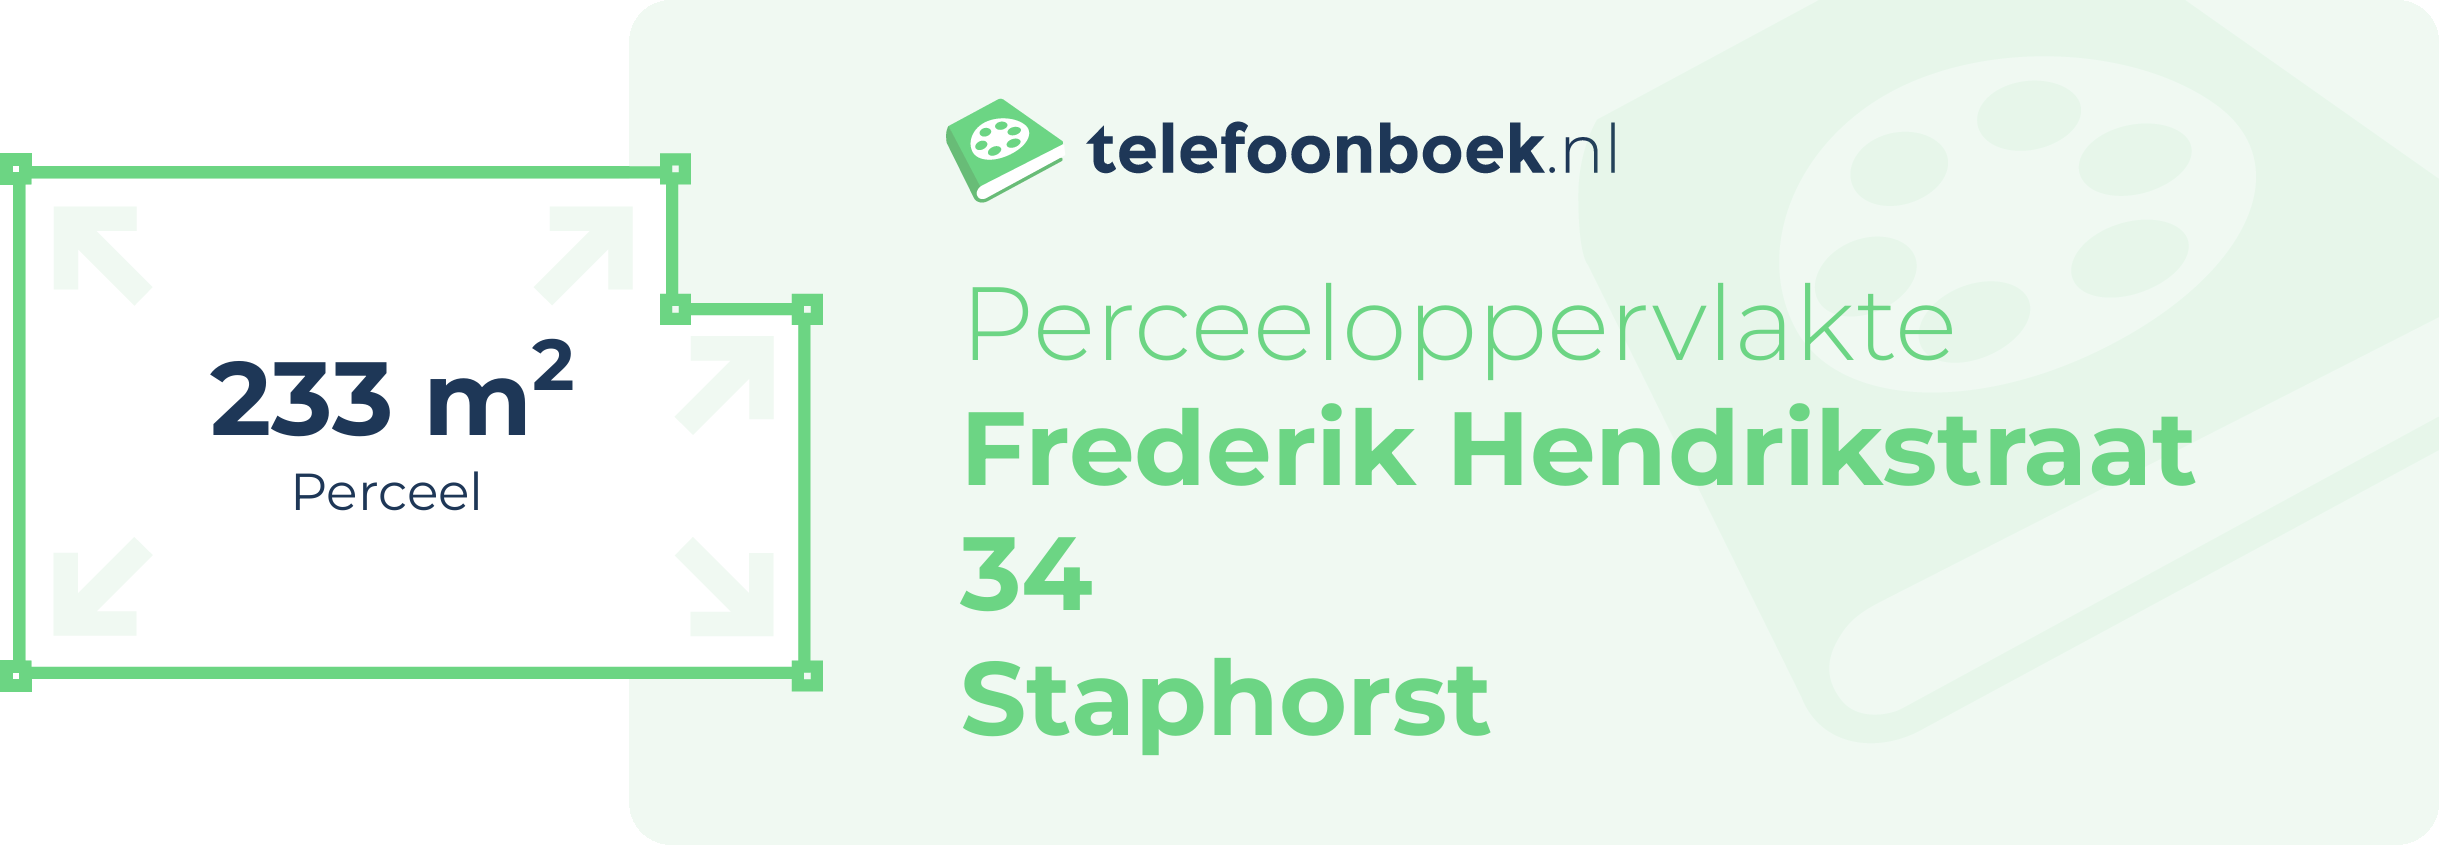 Perceeloppervlakte Frederik Hendrikstraat 34 Staphorst